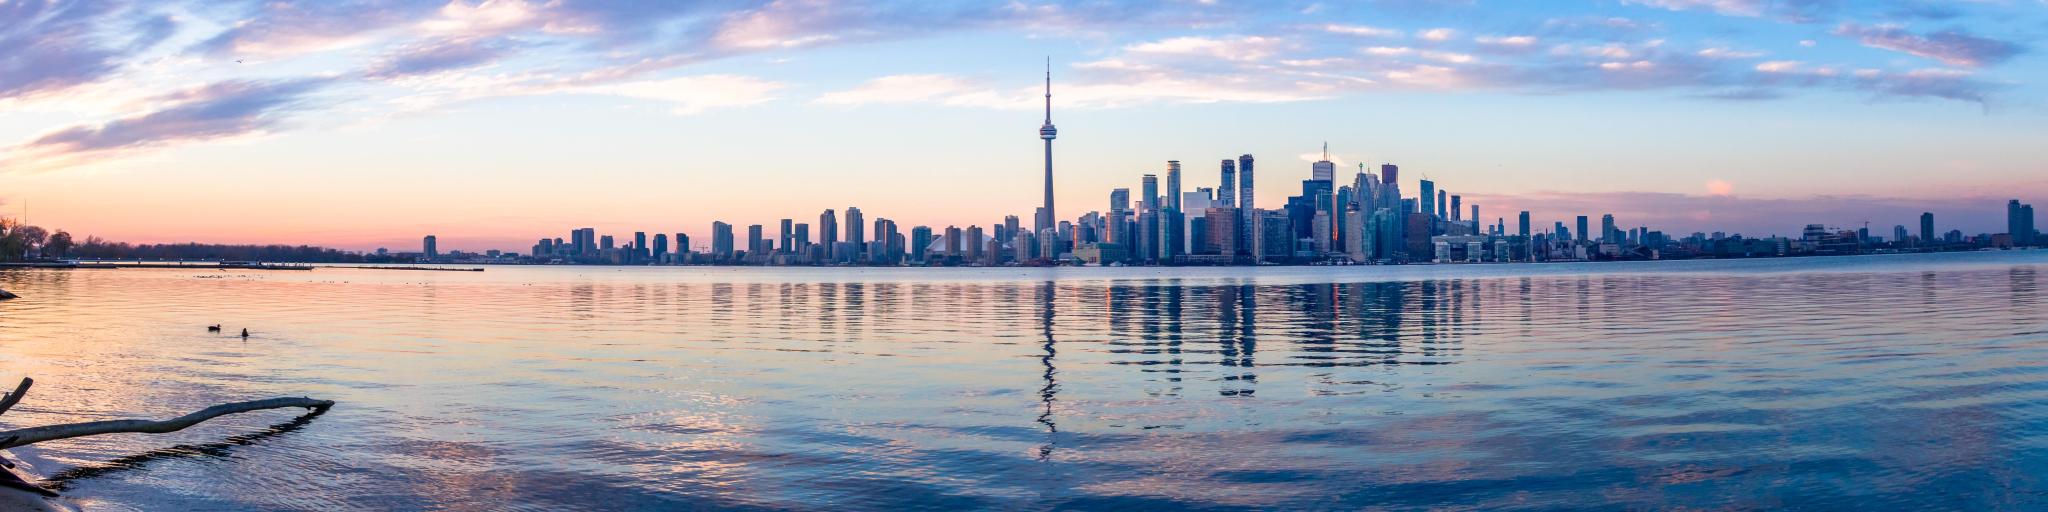 Panoramic view of Toronto skyline and Ontario lake - Toronto, Ontario, Canada